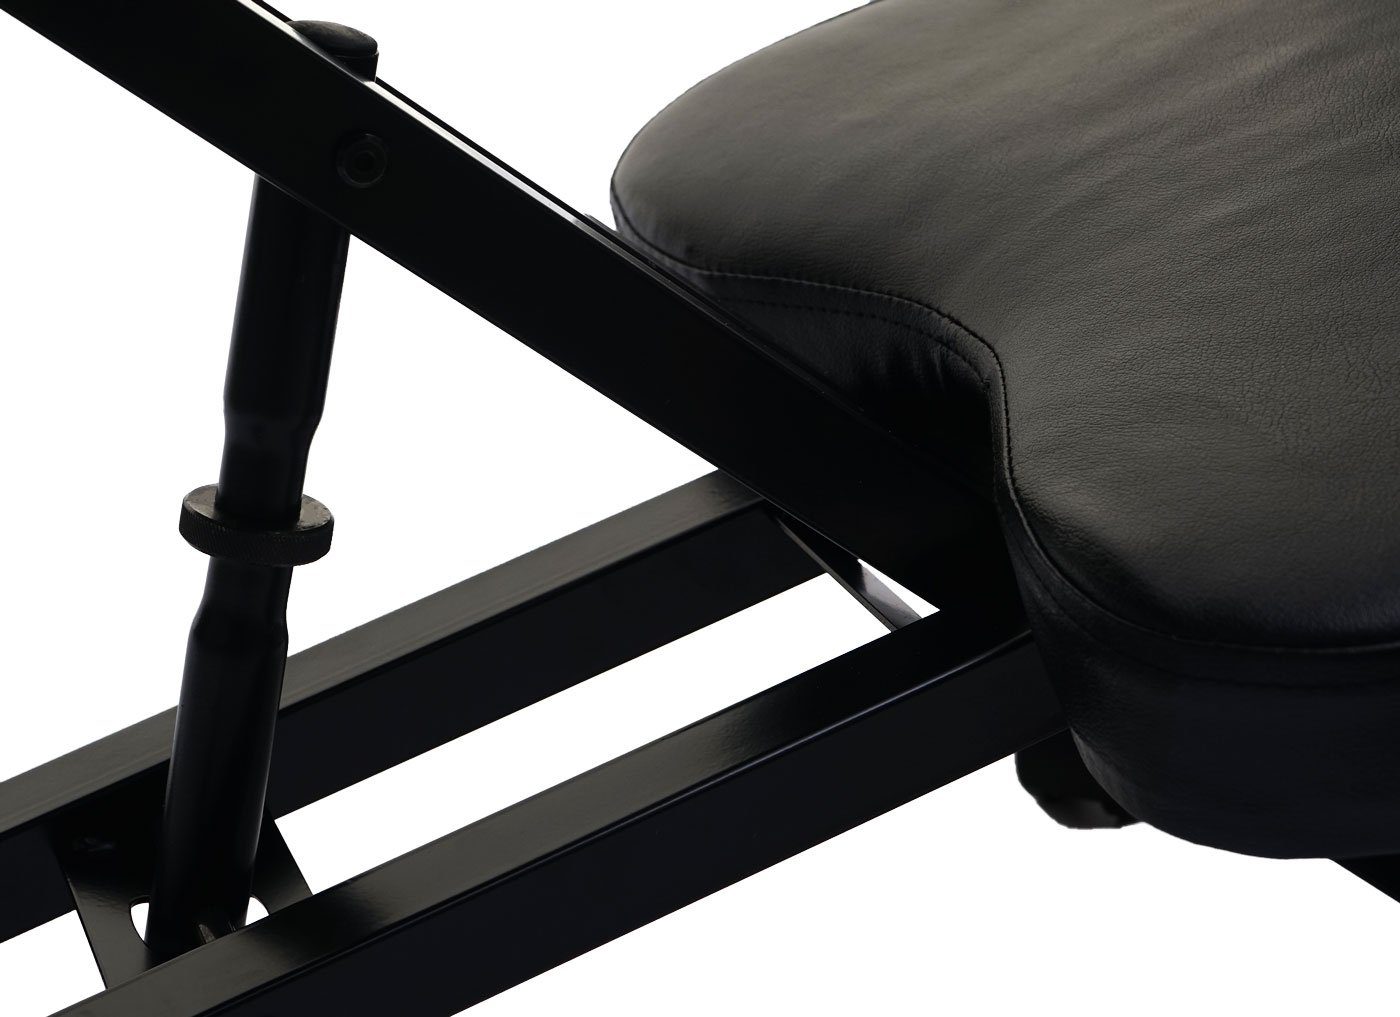 Weich MCW-E10, Sitzfläche, Sitzfläche und MCW Knie- schwarz gepolsterte Schreibtischstuhl Höhenverstellbare